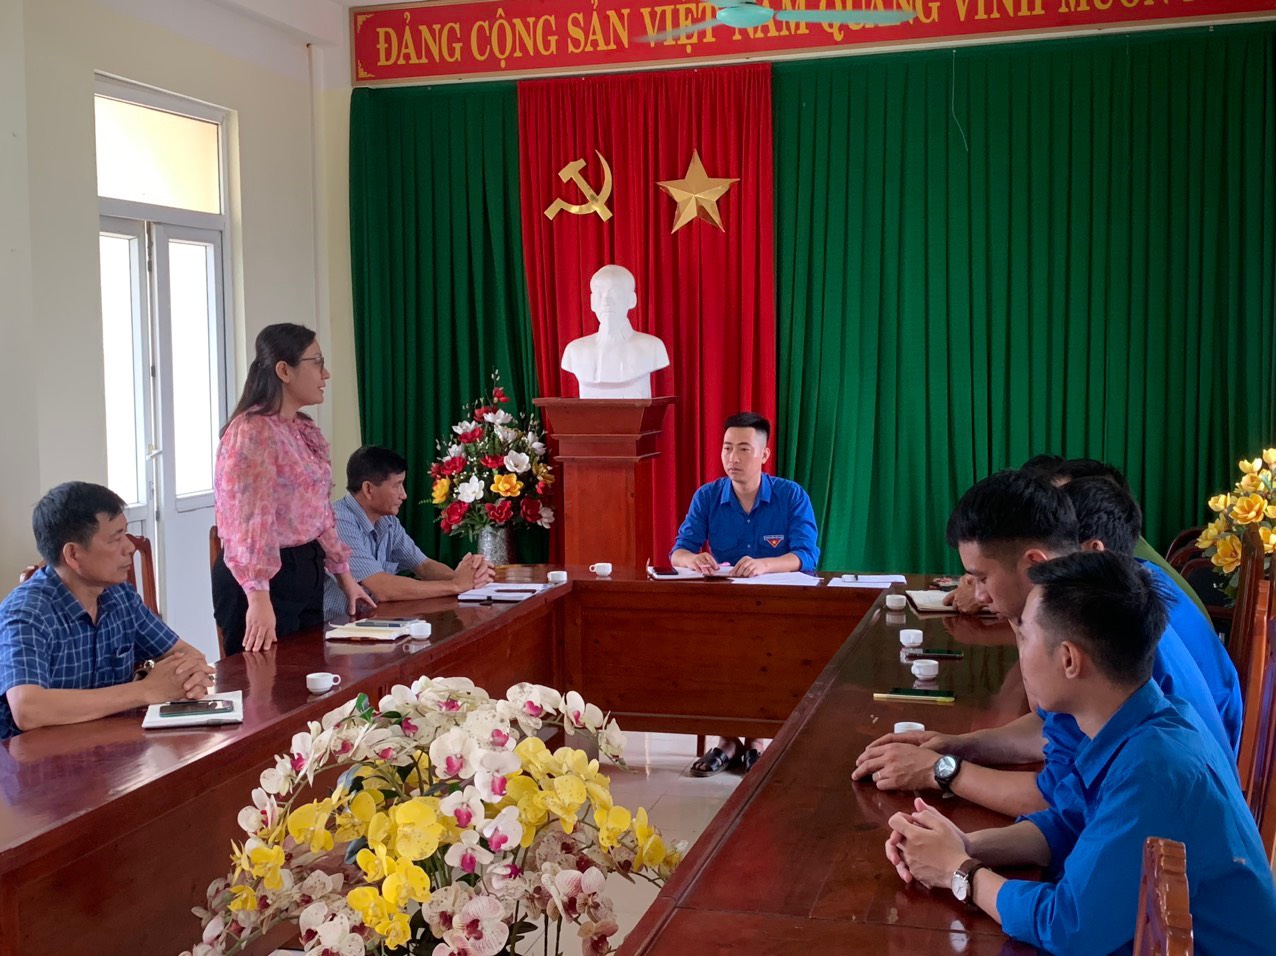 Đoàn TN xã Quang Lộc tiến hành hội nghị bầu chức danh Phó bí thư Đoàn xã nhiệm kỳ 2022-2027